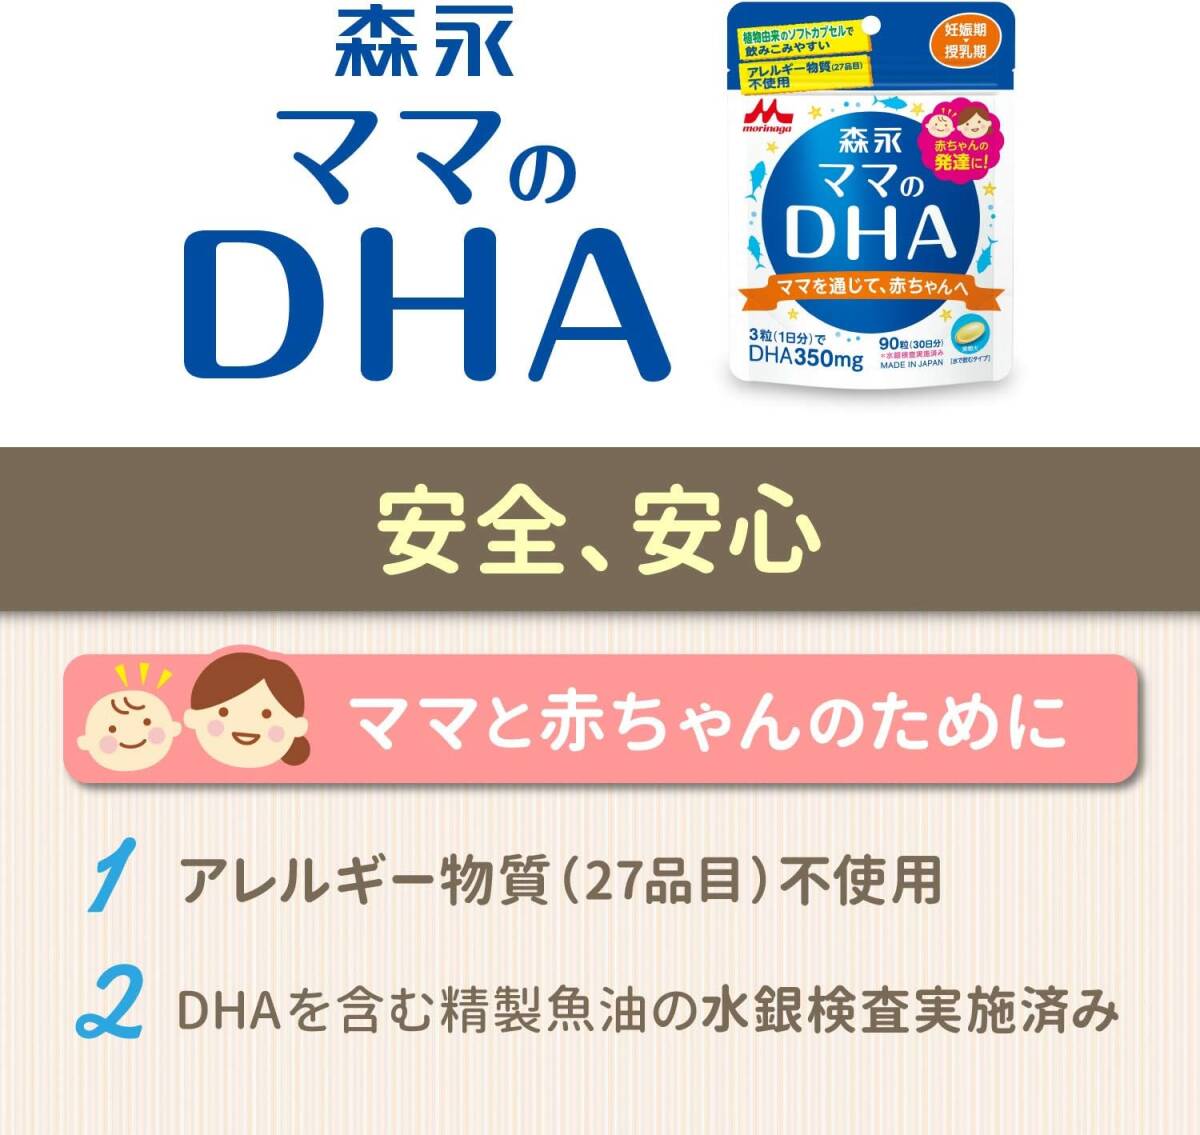  мама. DHA 90 шарик входить ( примерно 30 день минут ) беременность период ~ кормление период мама. DHA(ti- H e-) лес .90 шарик входить ( примерно 30 день минут ) беременность период ~.